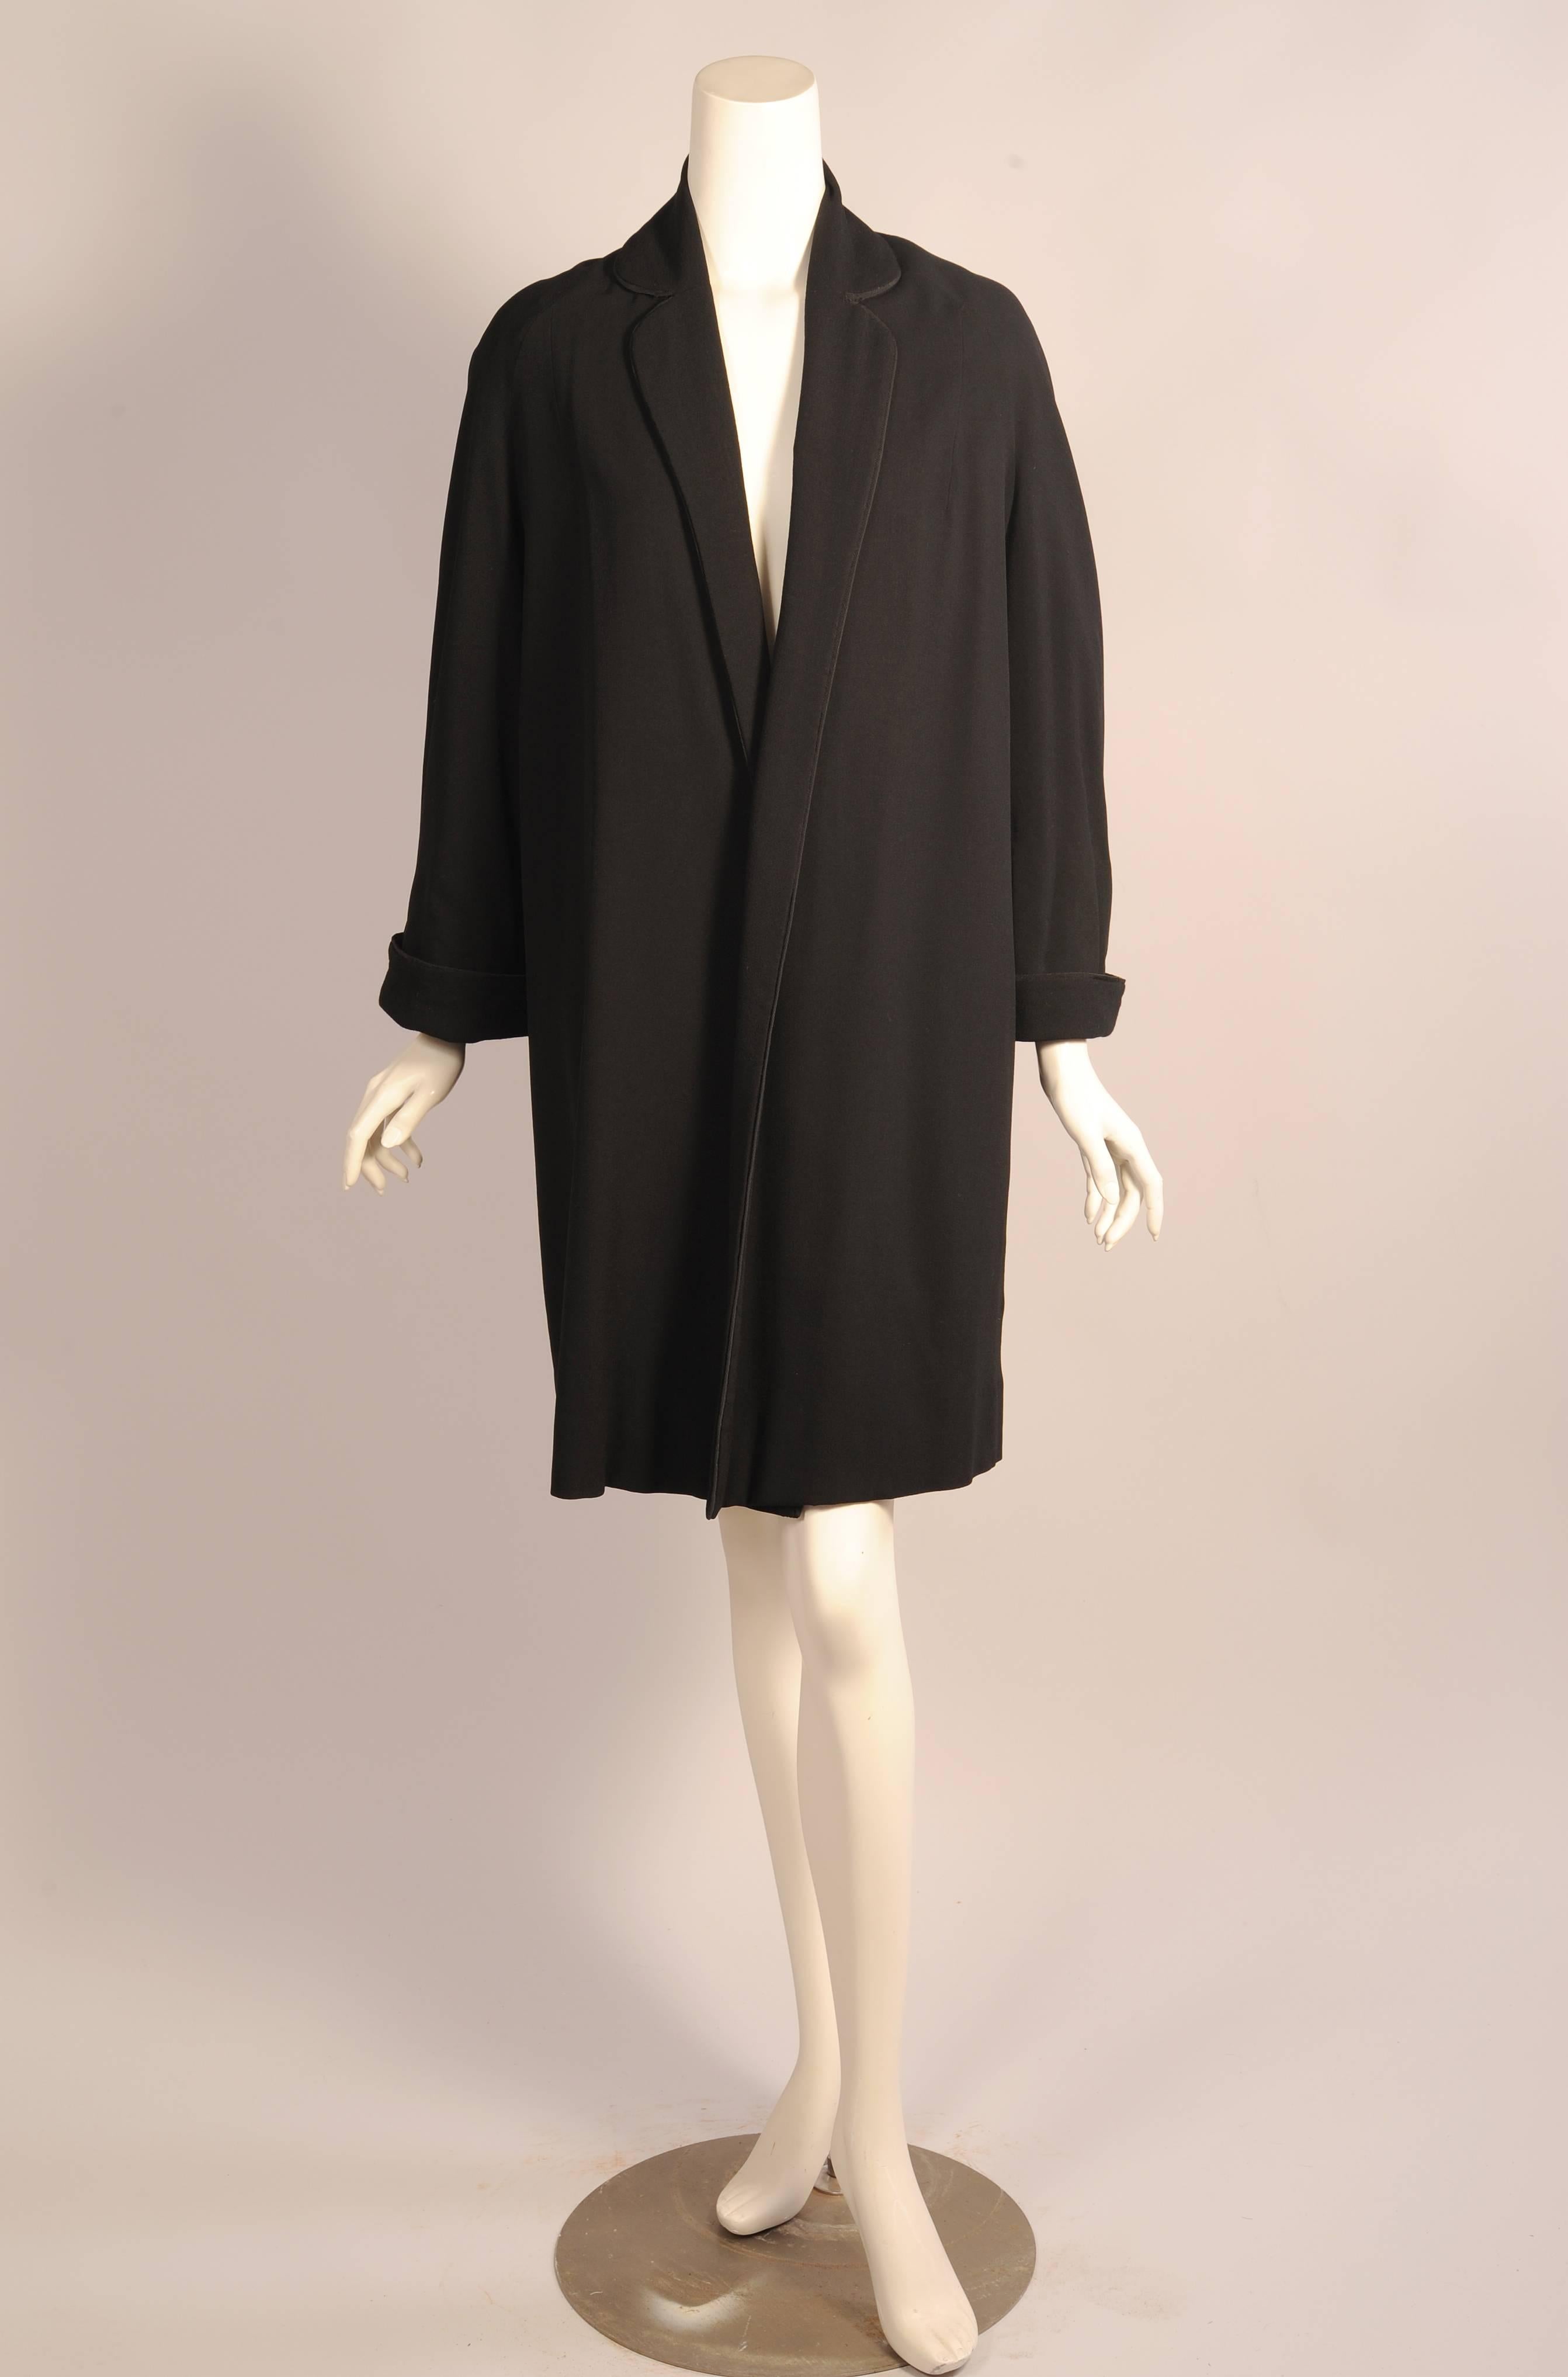 Leichte schwarze Wolle wird für diesen Duster- oder Swing-Mantel von Pierre Balmain Haute Couture verwendet. Der gekerbte Kragen reicht bei diesem verschlusslosen Mantel bis zum Saum. Der Kragen und die Manschetten sind mit schwarzem Soutache